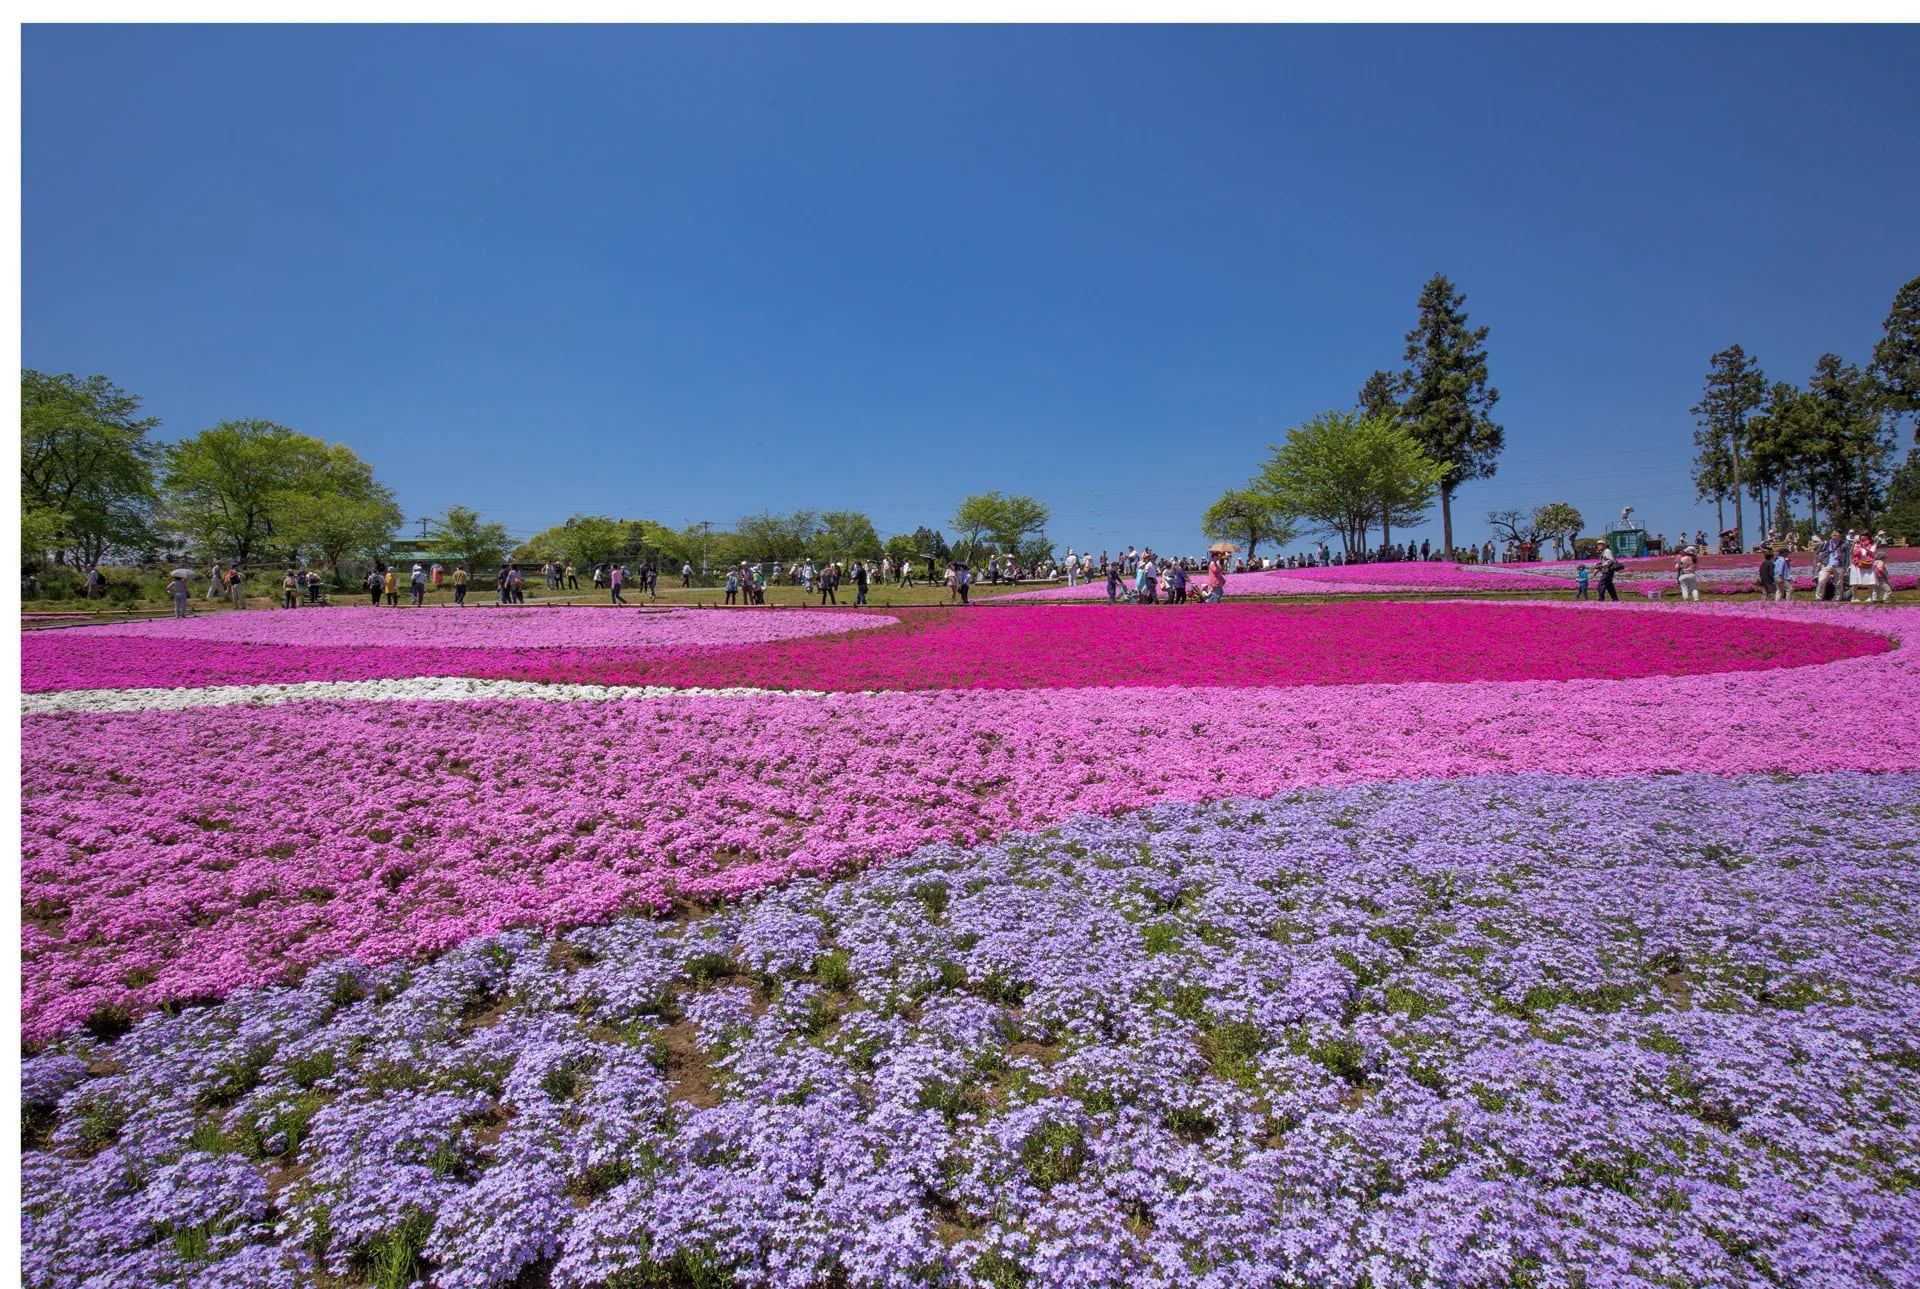 El constraste de colores entre blanco, rosa y fucsia es uno de los principales atractivos del parque